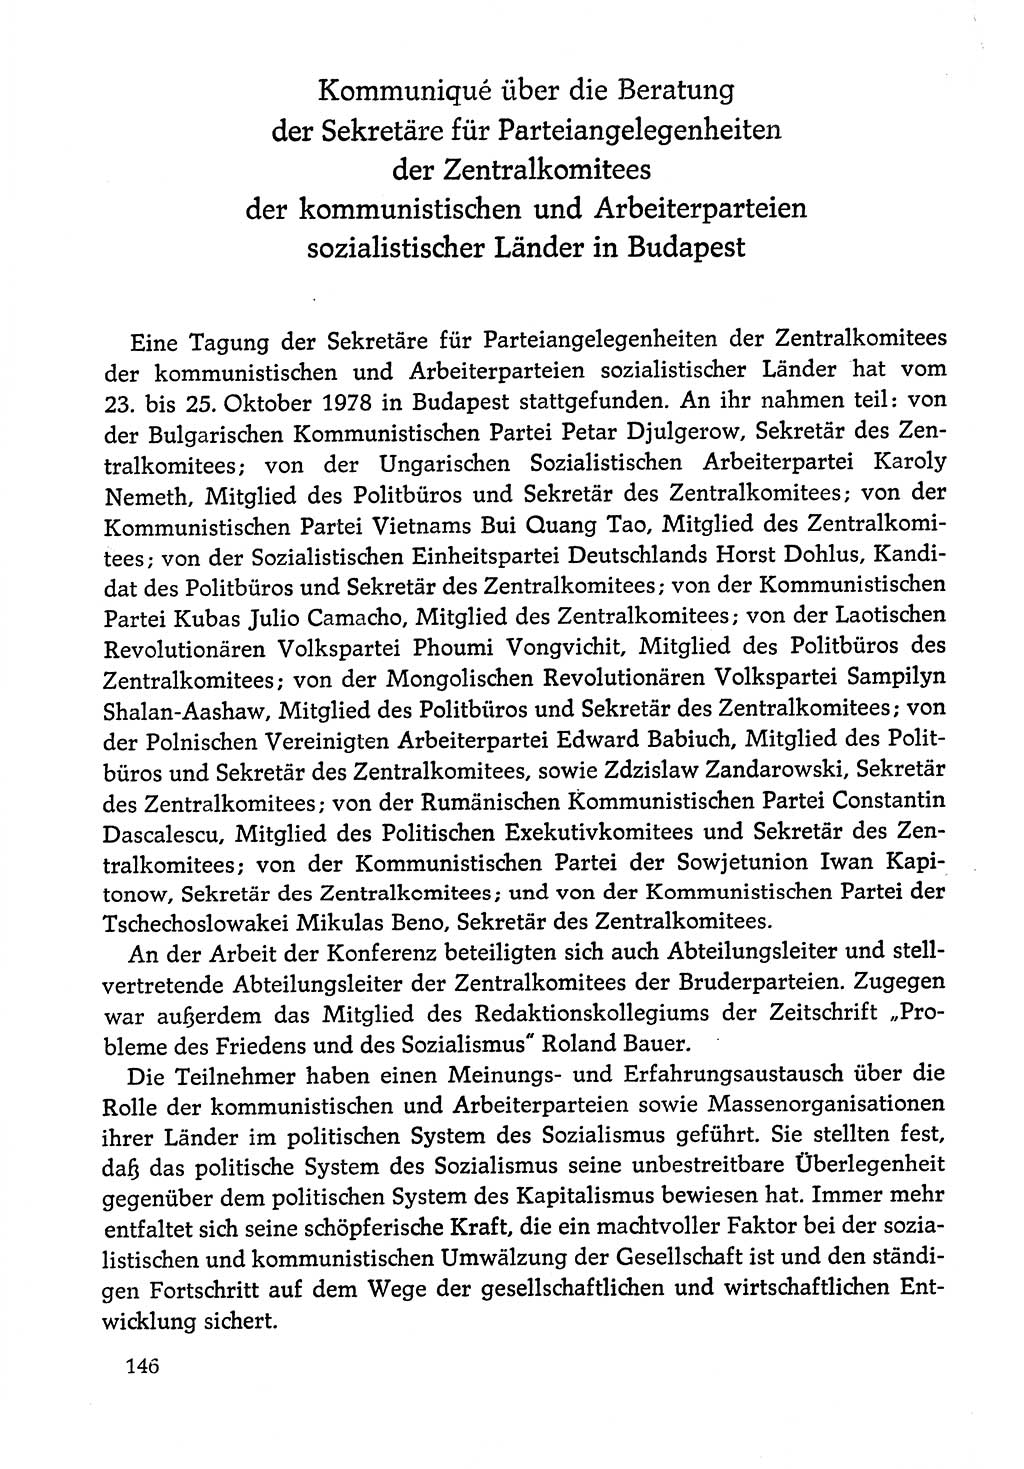 Dokumente der Sozialistischen Einheitspartei Deutschlands (SED) [Deutsche Demokratische Republik (DDR)] 1978-1979, Seite 146 (Dok. SED DDR 1978-1979, S. 146)